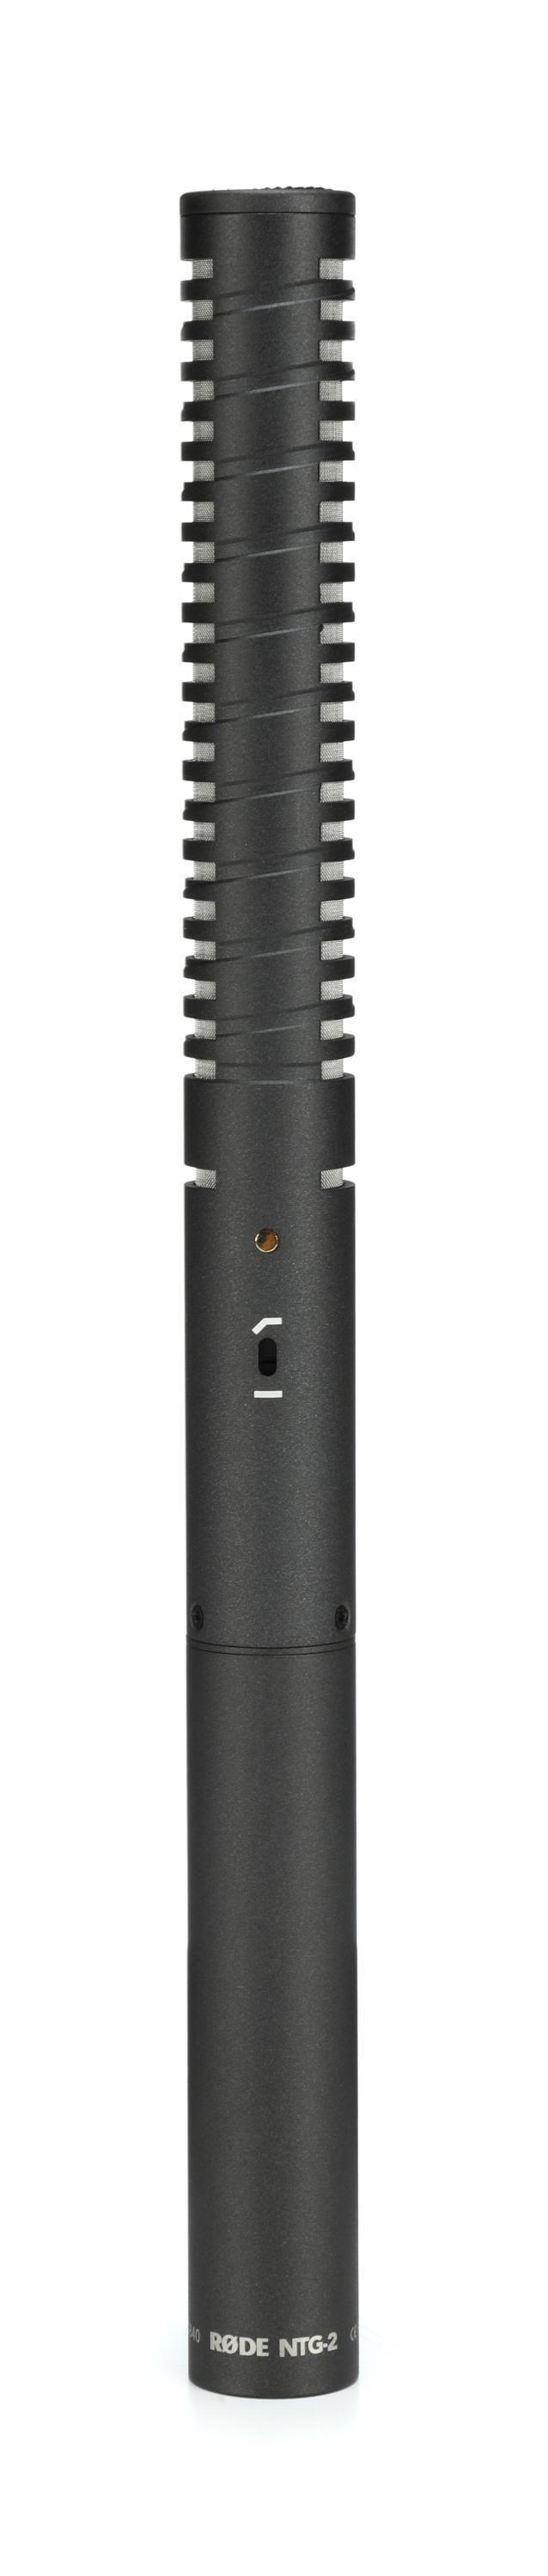 Bundled Item: Rode NTG-2 Multi-powered Shotgun Microphone